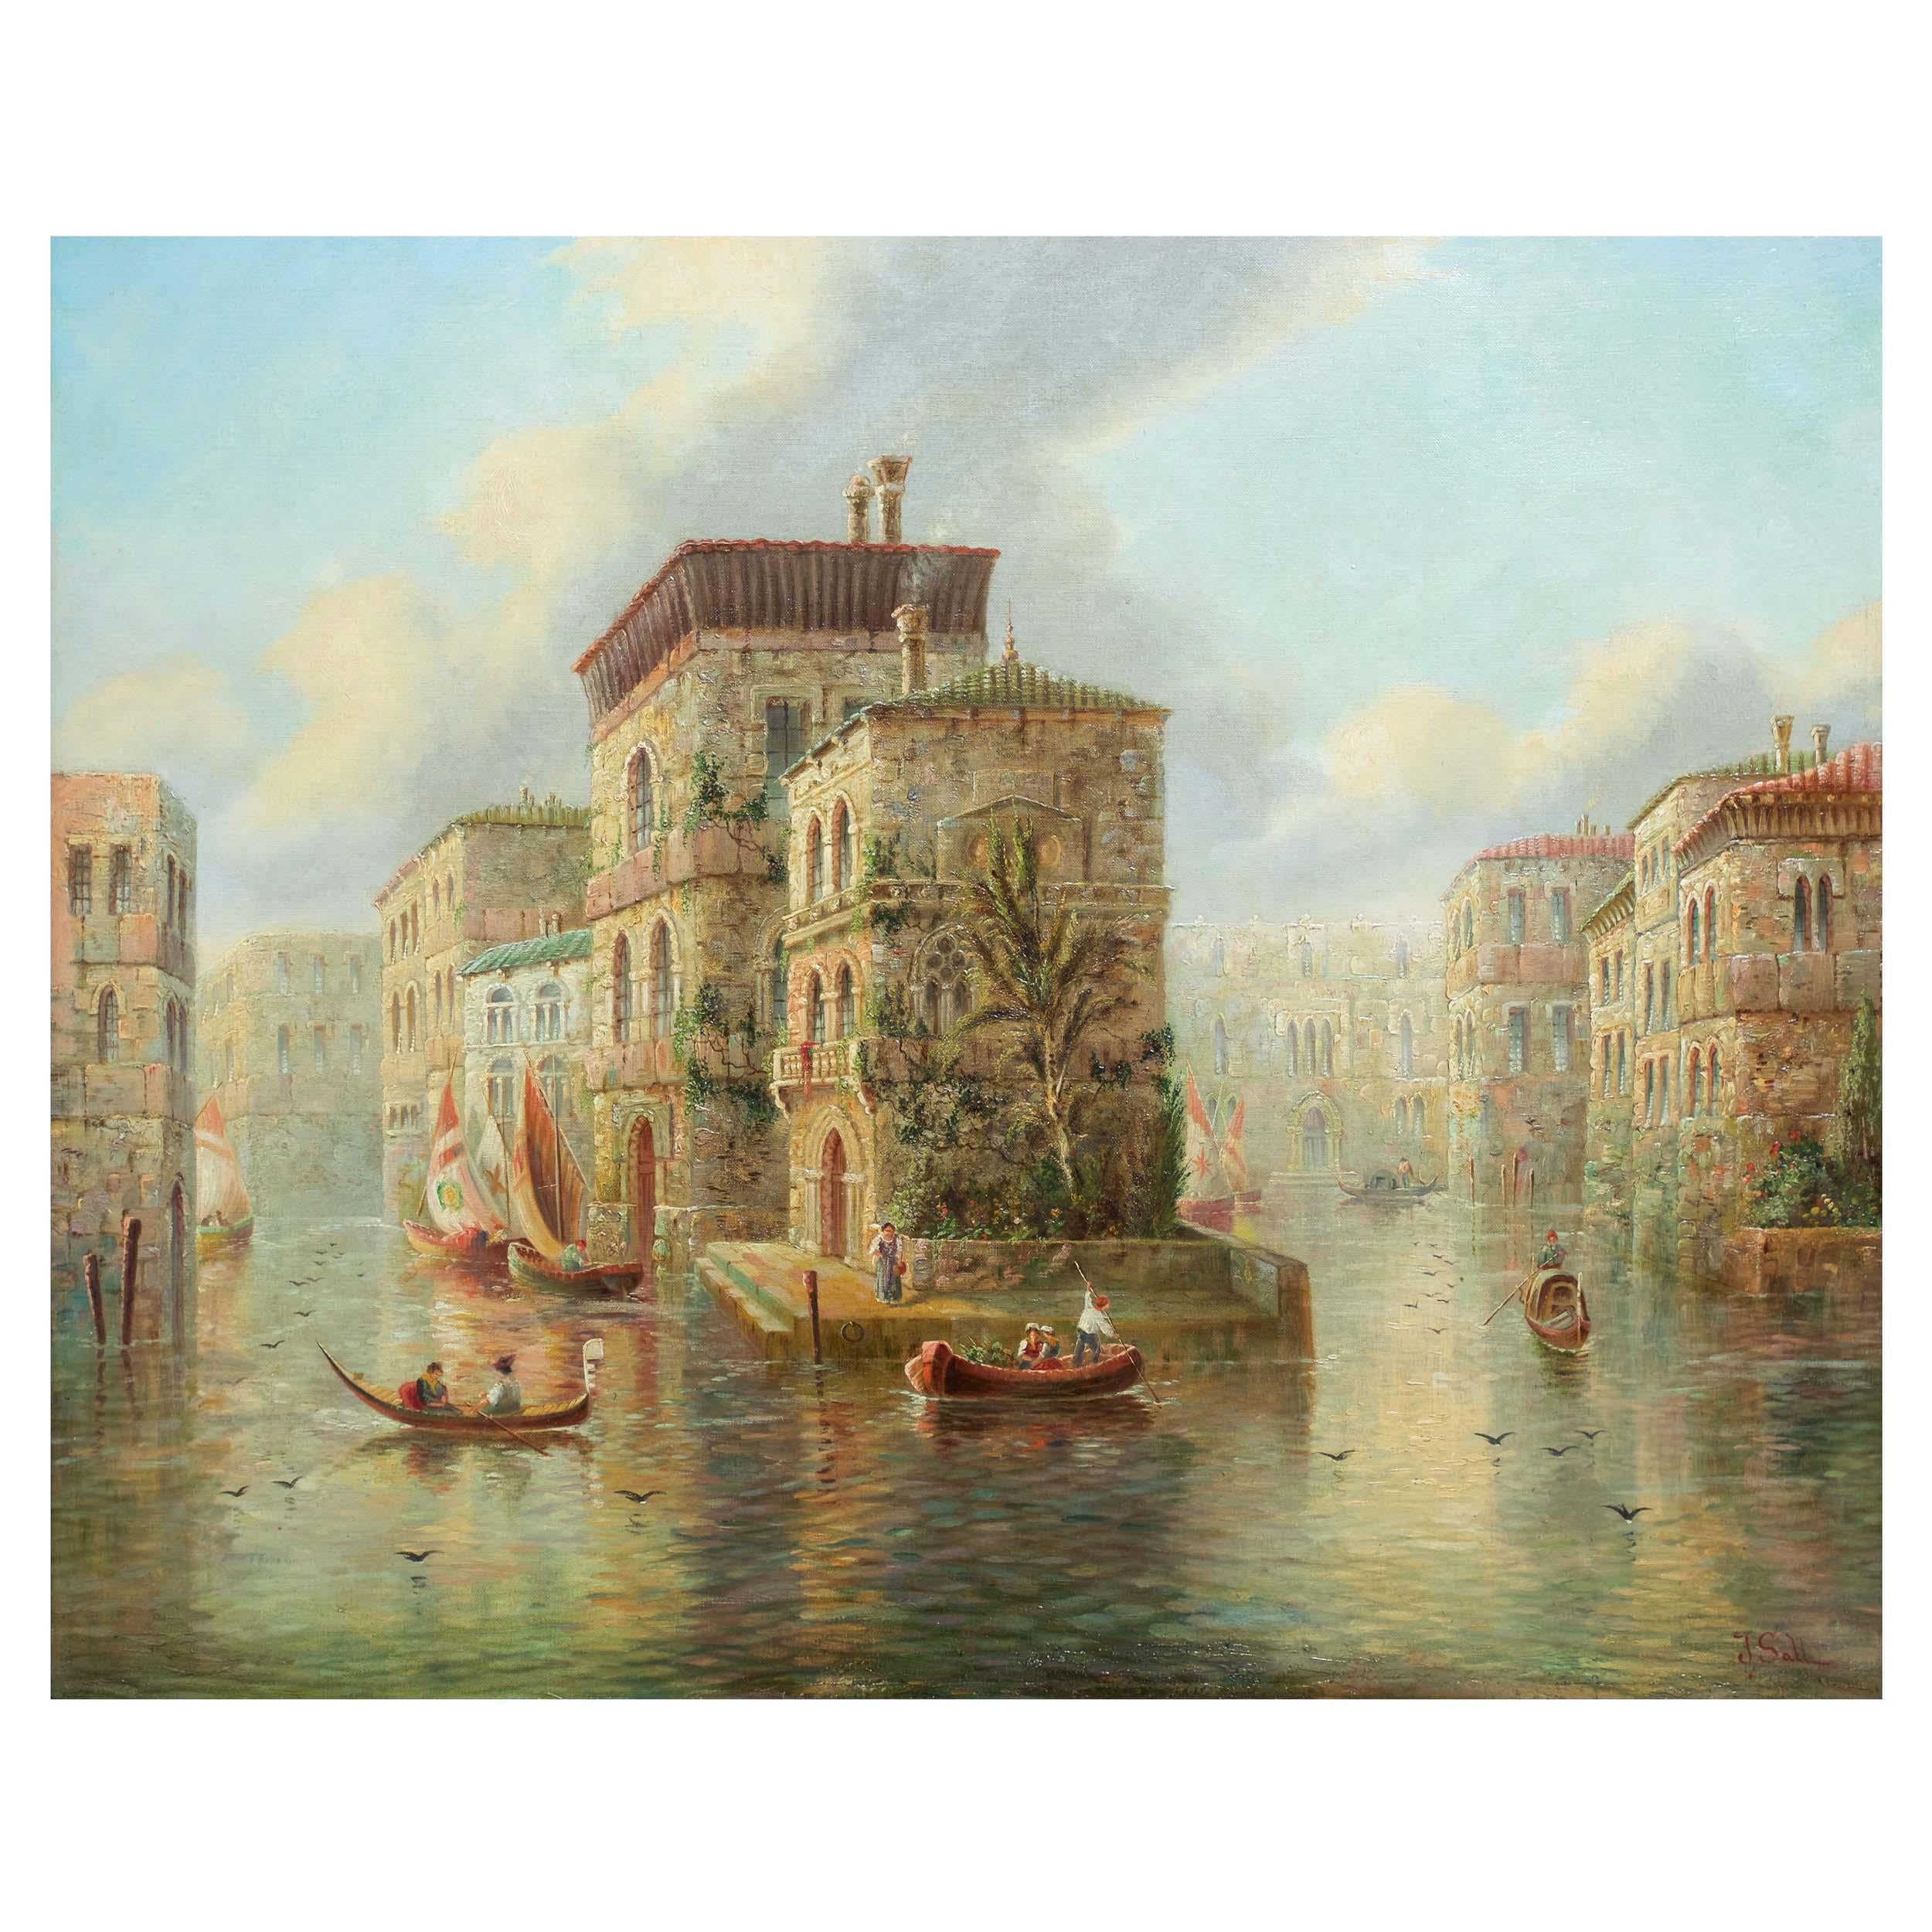 Venetian Capriccio Landscape Painting by James Salt 'English, 1850-1903'